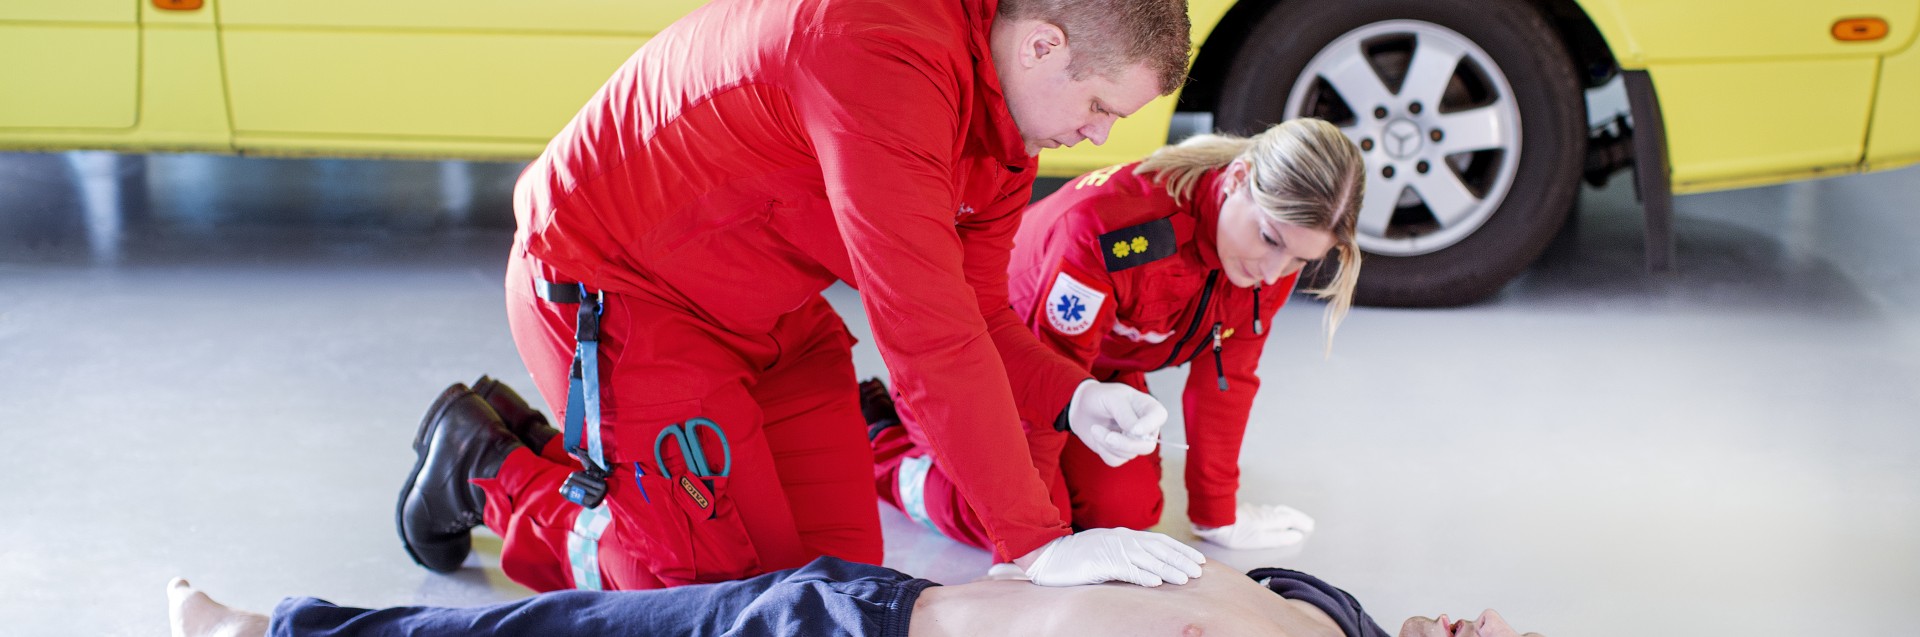 Ambulansearbeidere under ferdighetstrening med traumedukke